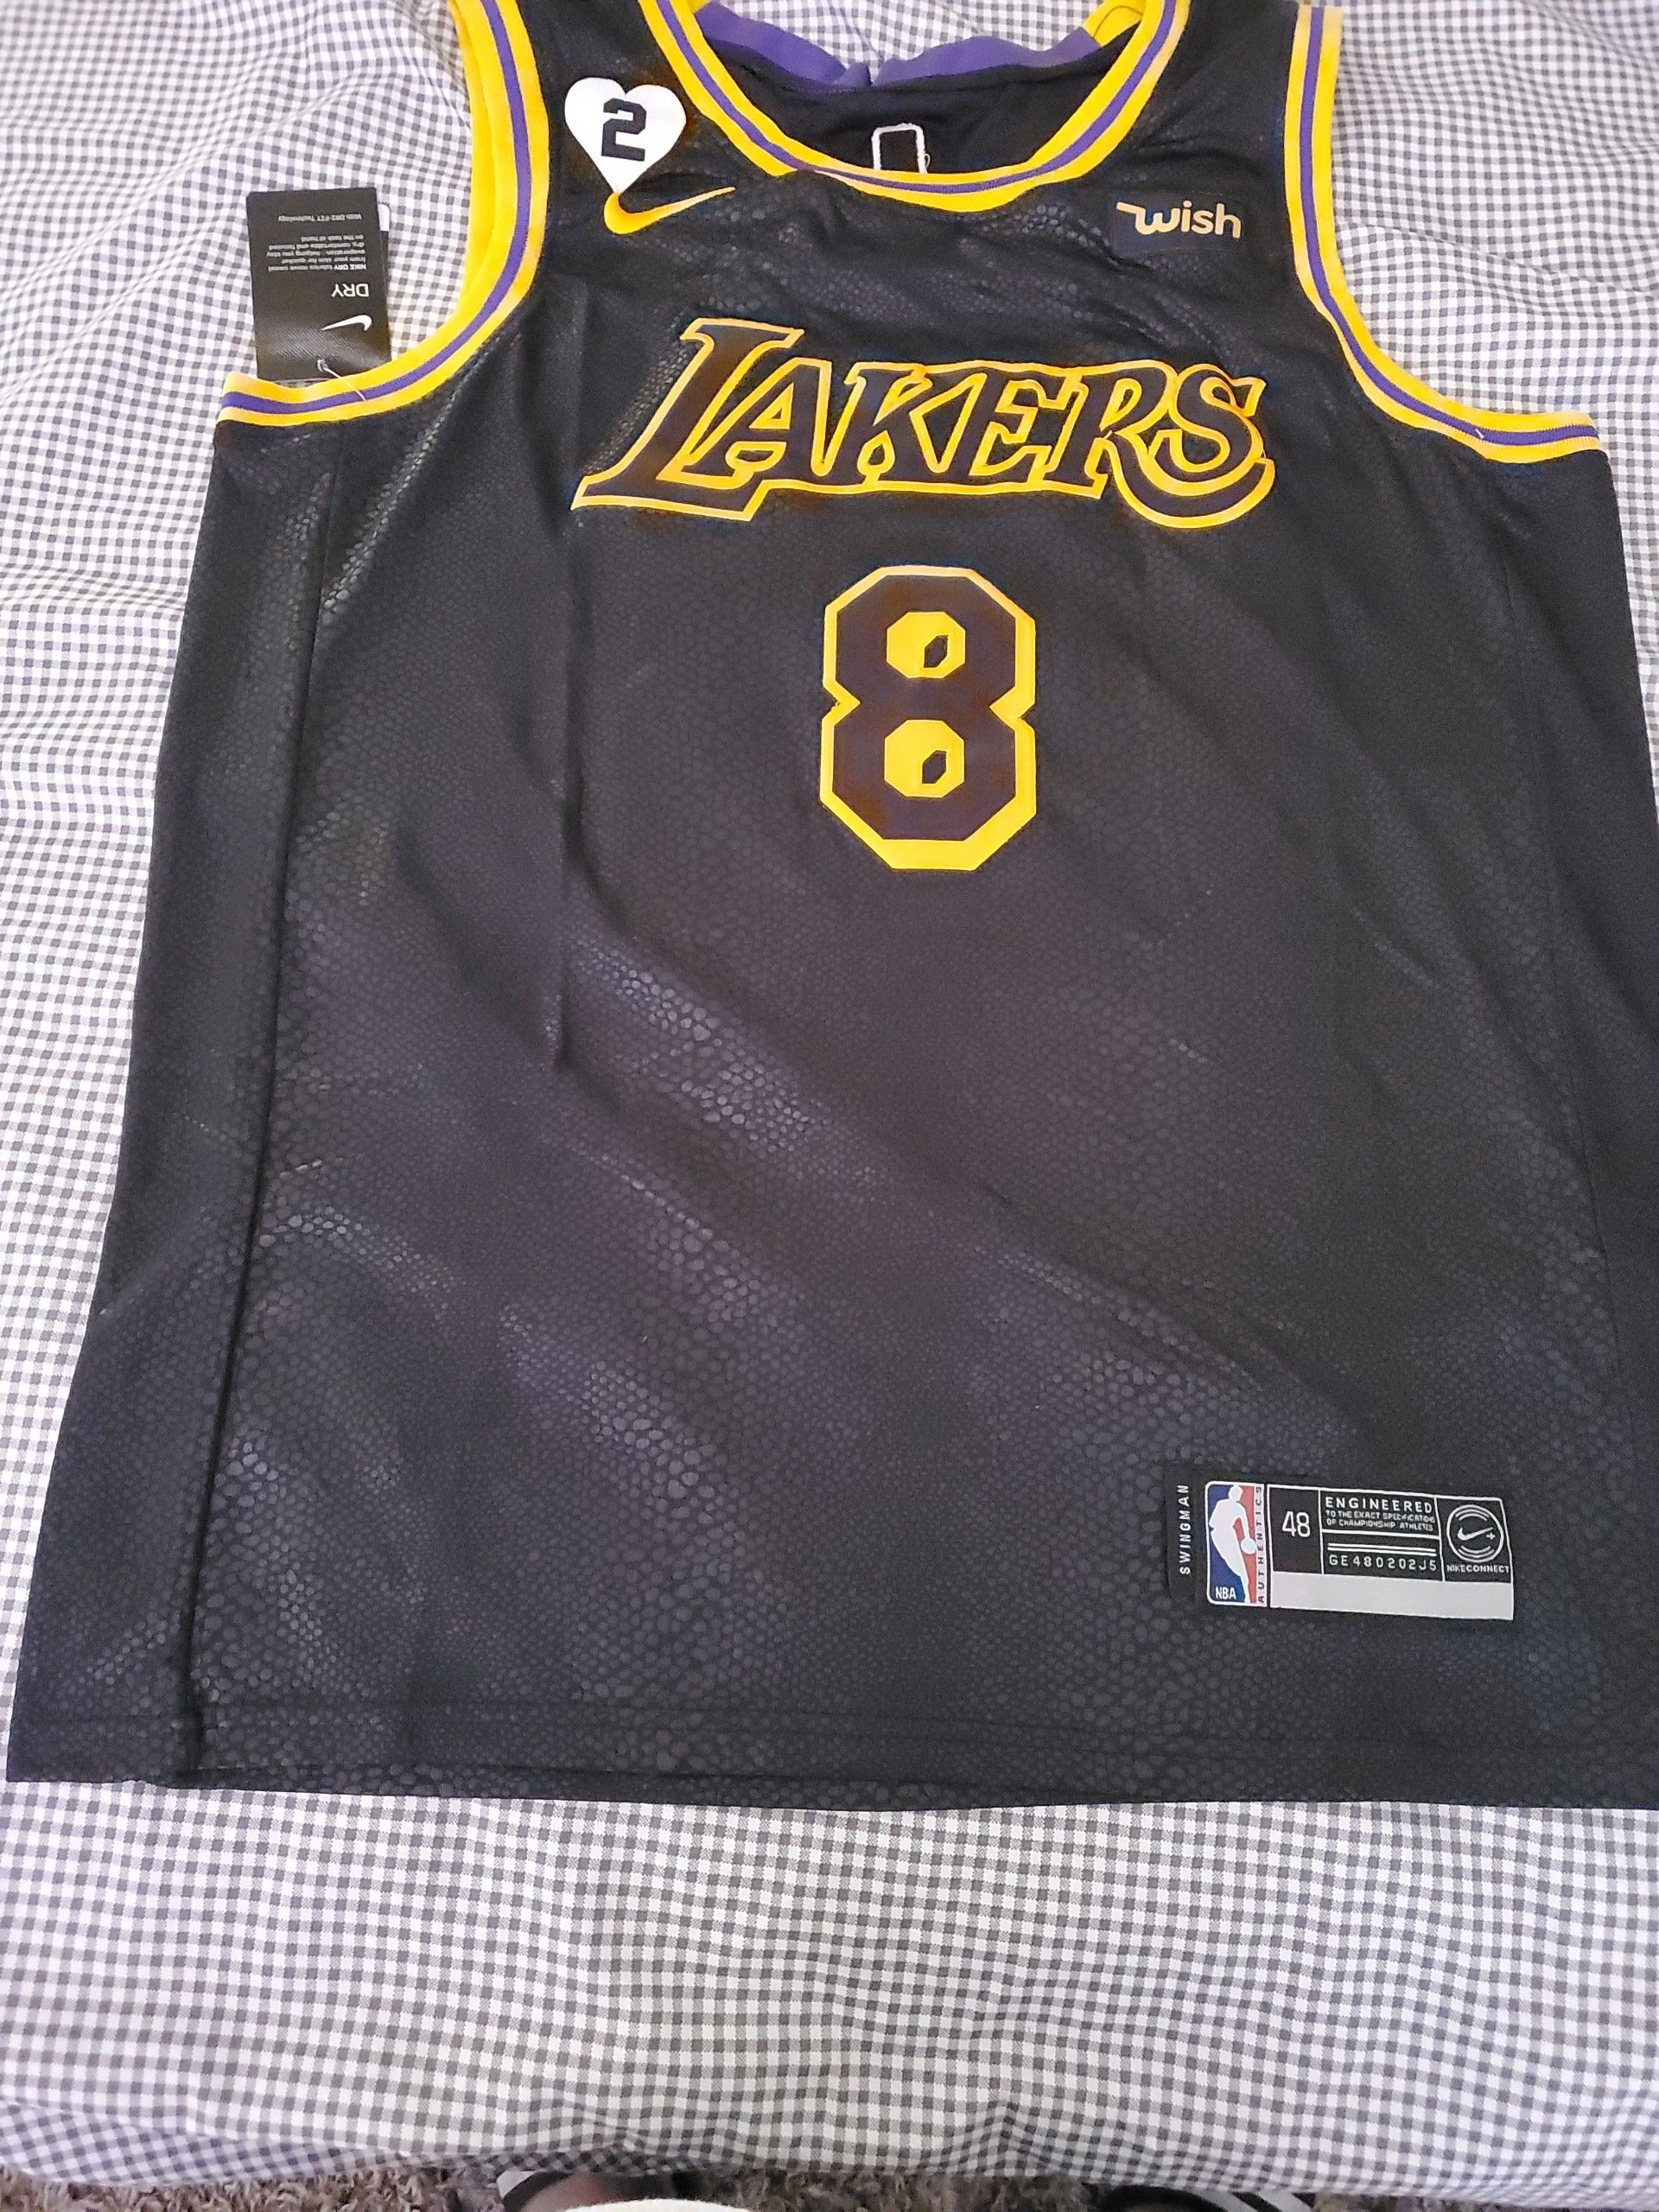 Kobe Bryant Lakers Mamba Day Jersey